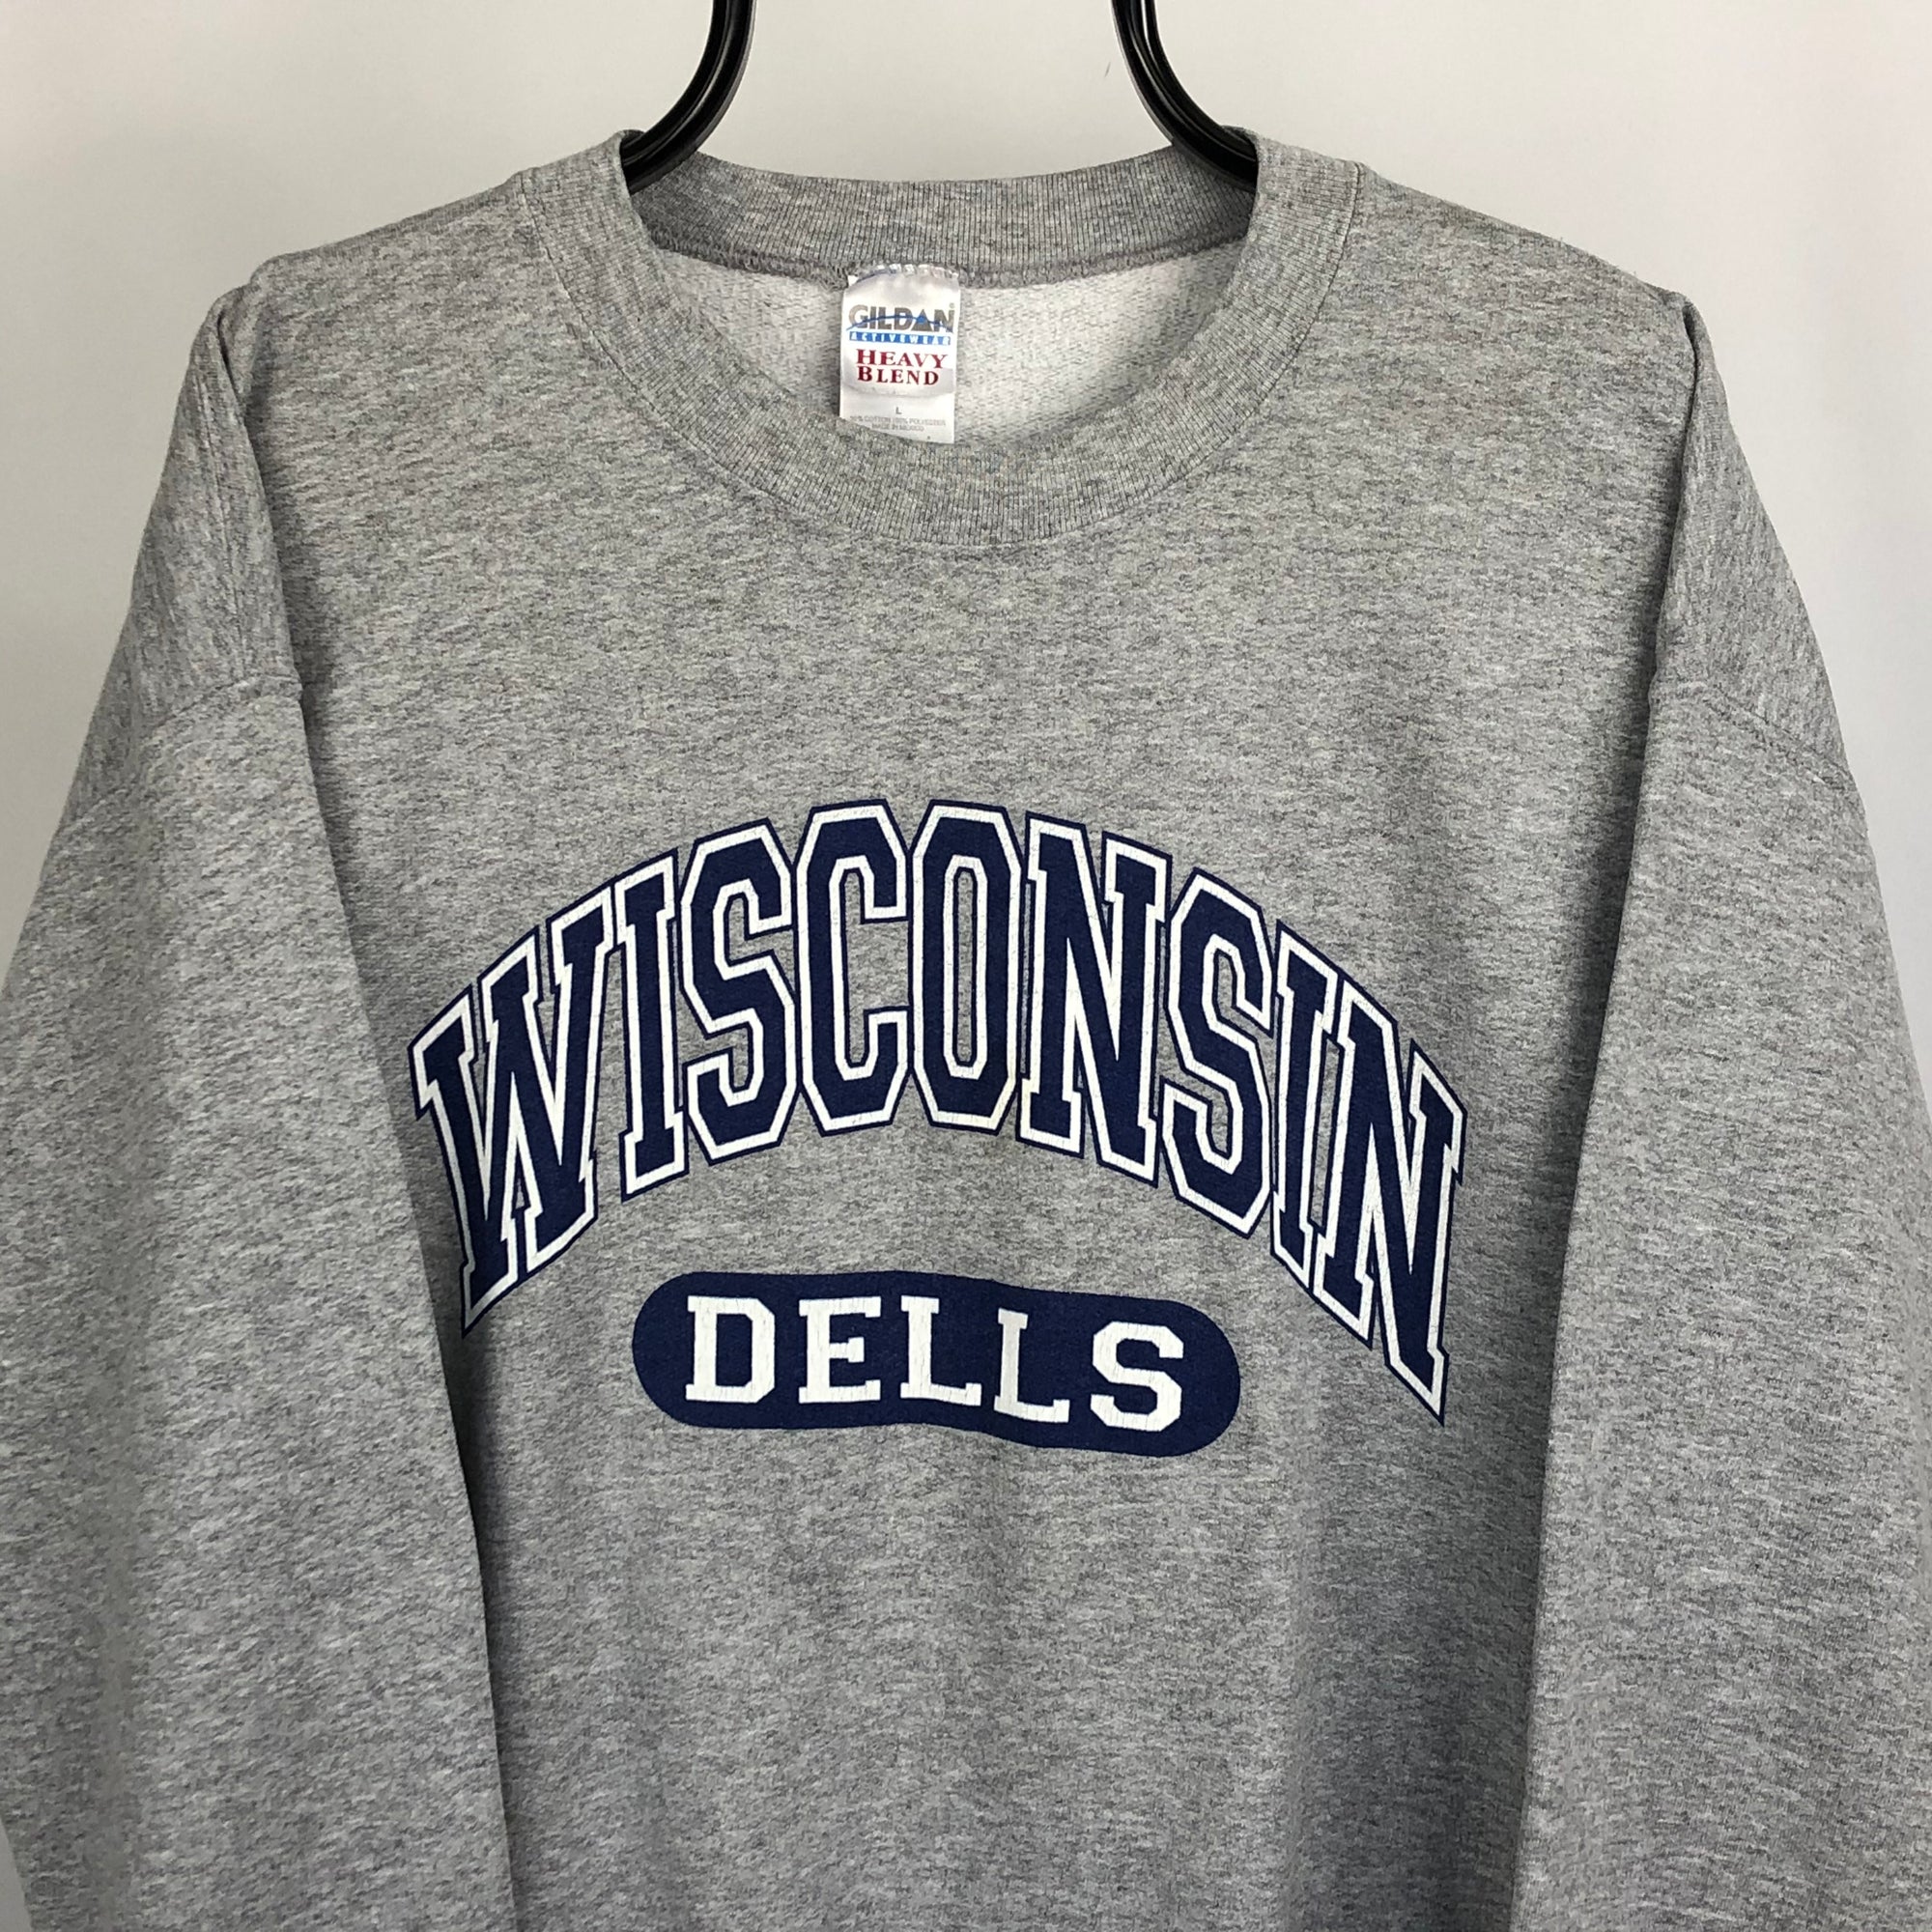 Vintage 'Wisconsin' College Sweatshirt - Men's Large/Women's XL